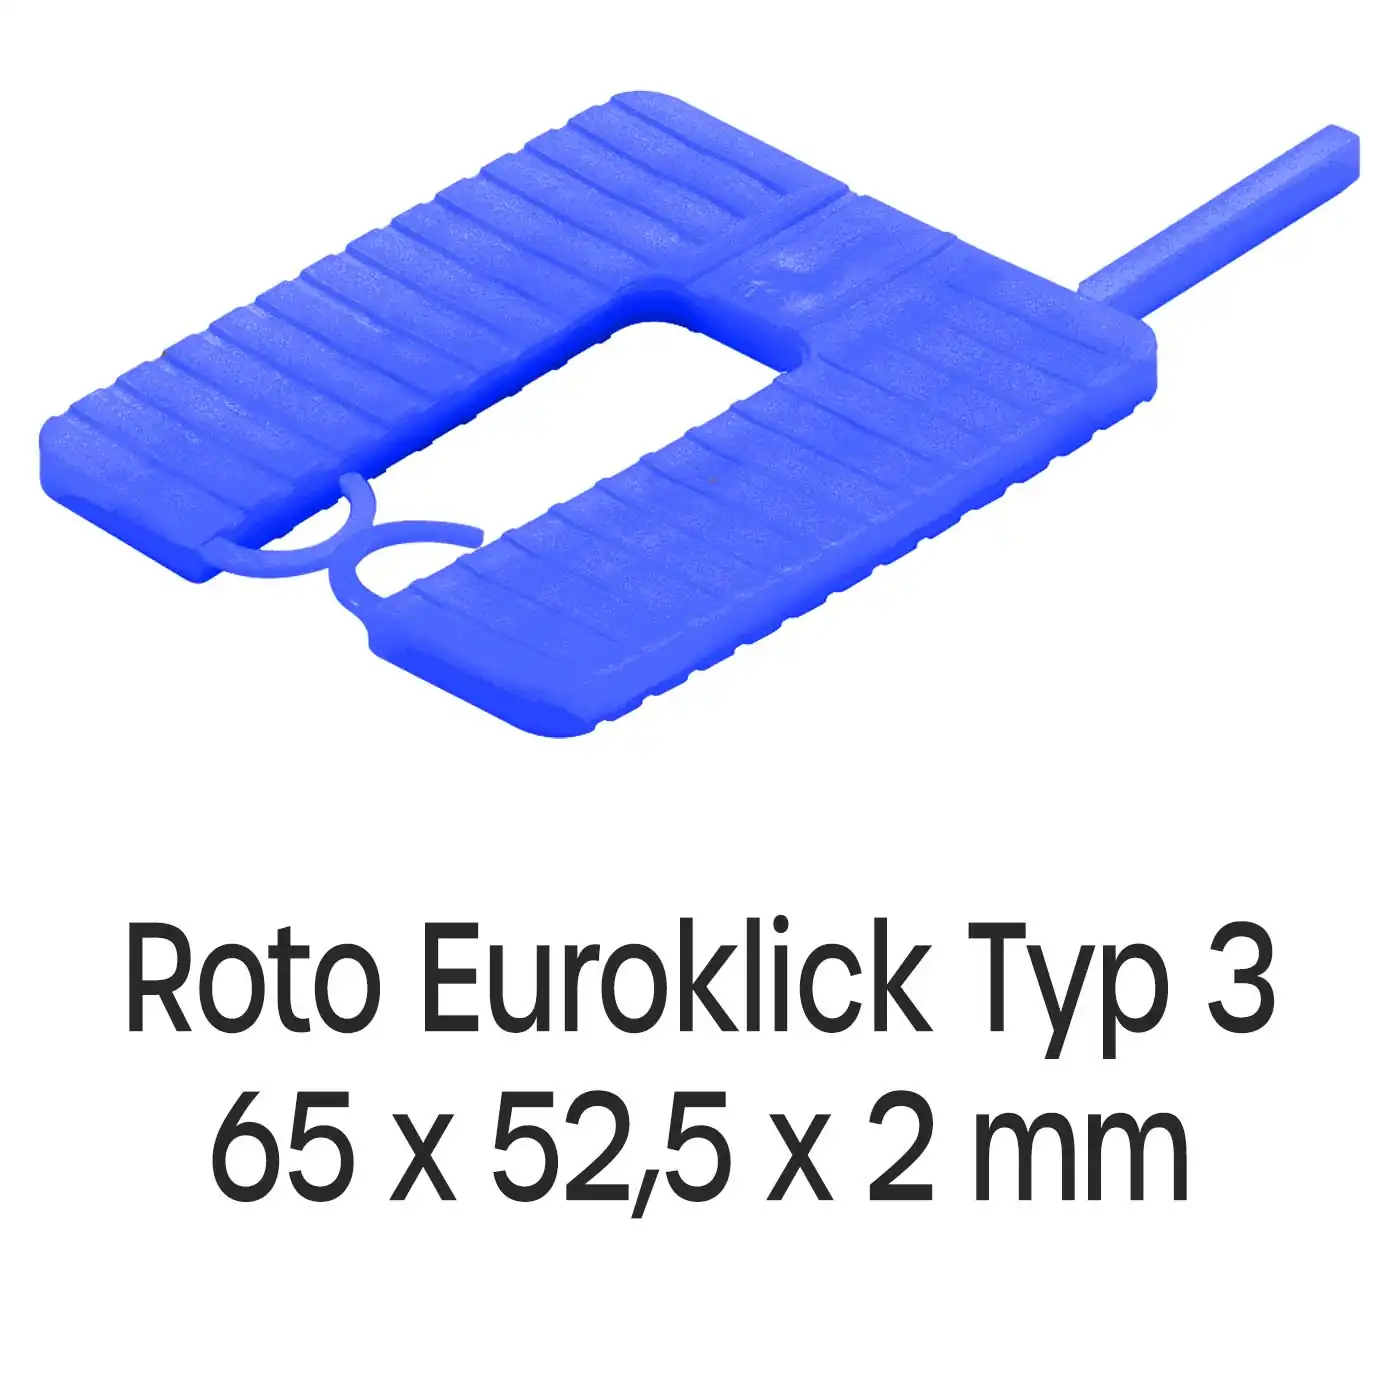 Distanzplatten Roto Euroklick Typ 2 65 x 52,5 x 2 mm 1000 Stück